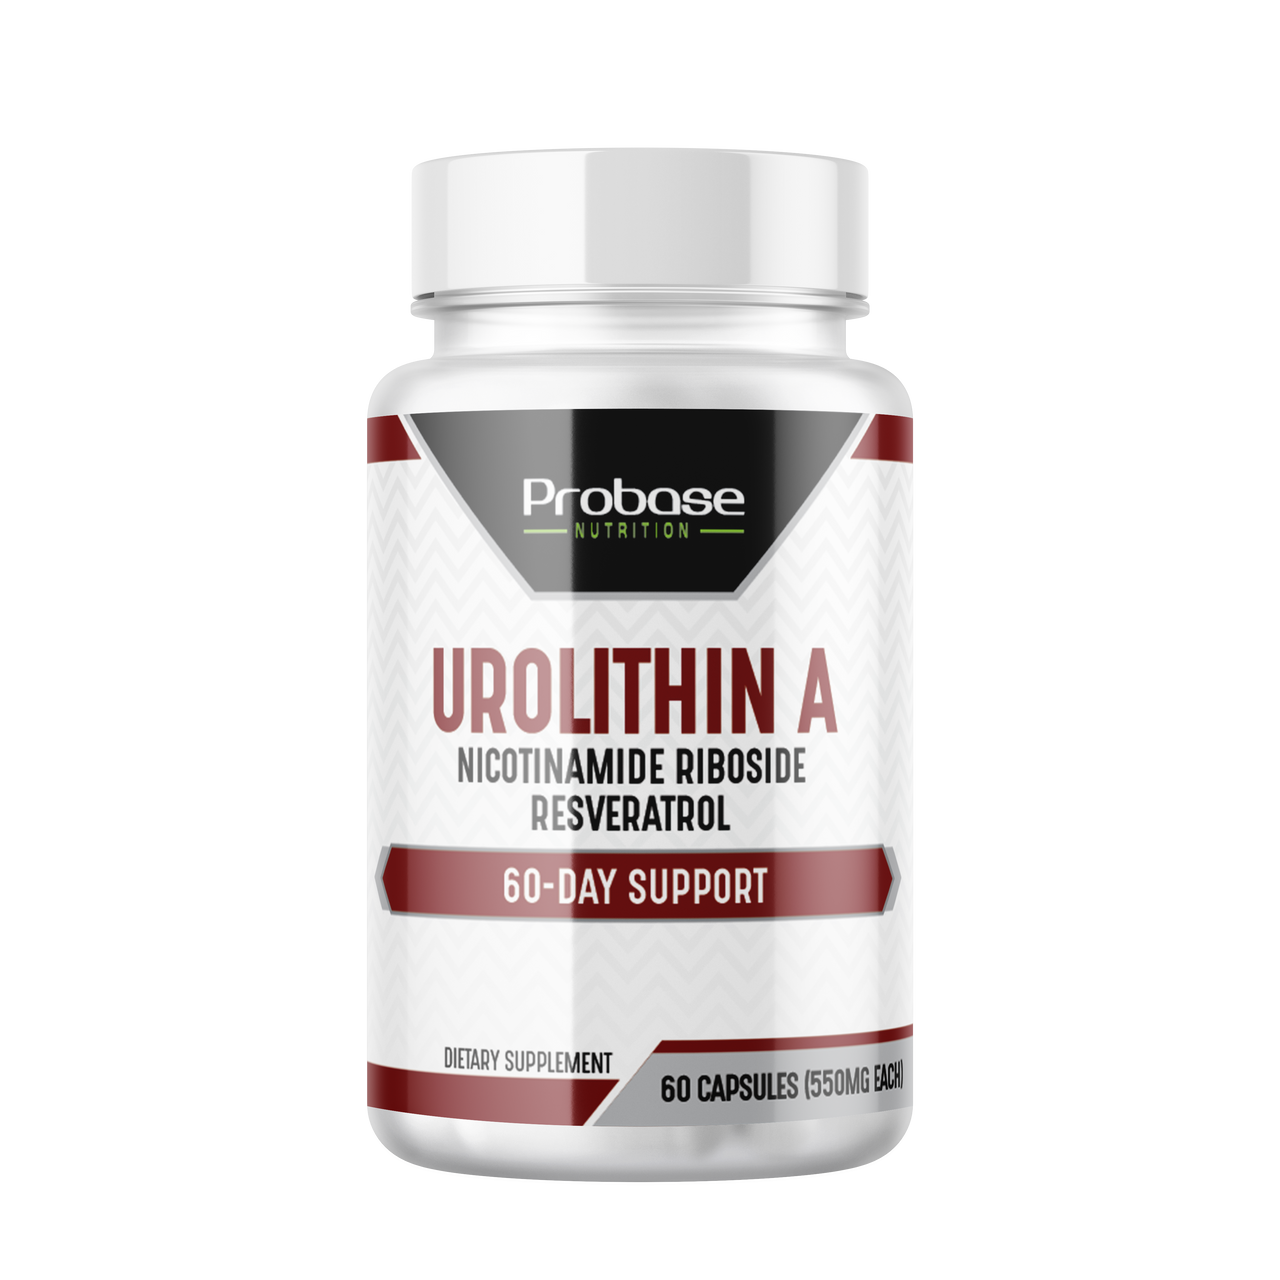 Probase Urolithin A - [Suministro para 60 días] - con NR y resveratrol agregados, soporte de salud celular de primera calidad - Alternativa a NMN, NAD, CoQ10, PQQ para un envejecimiento saludable